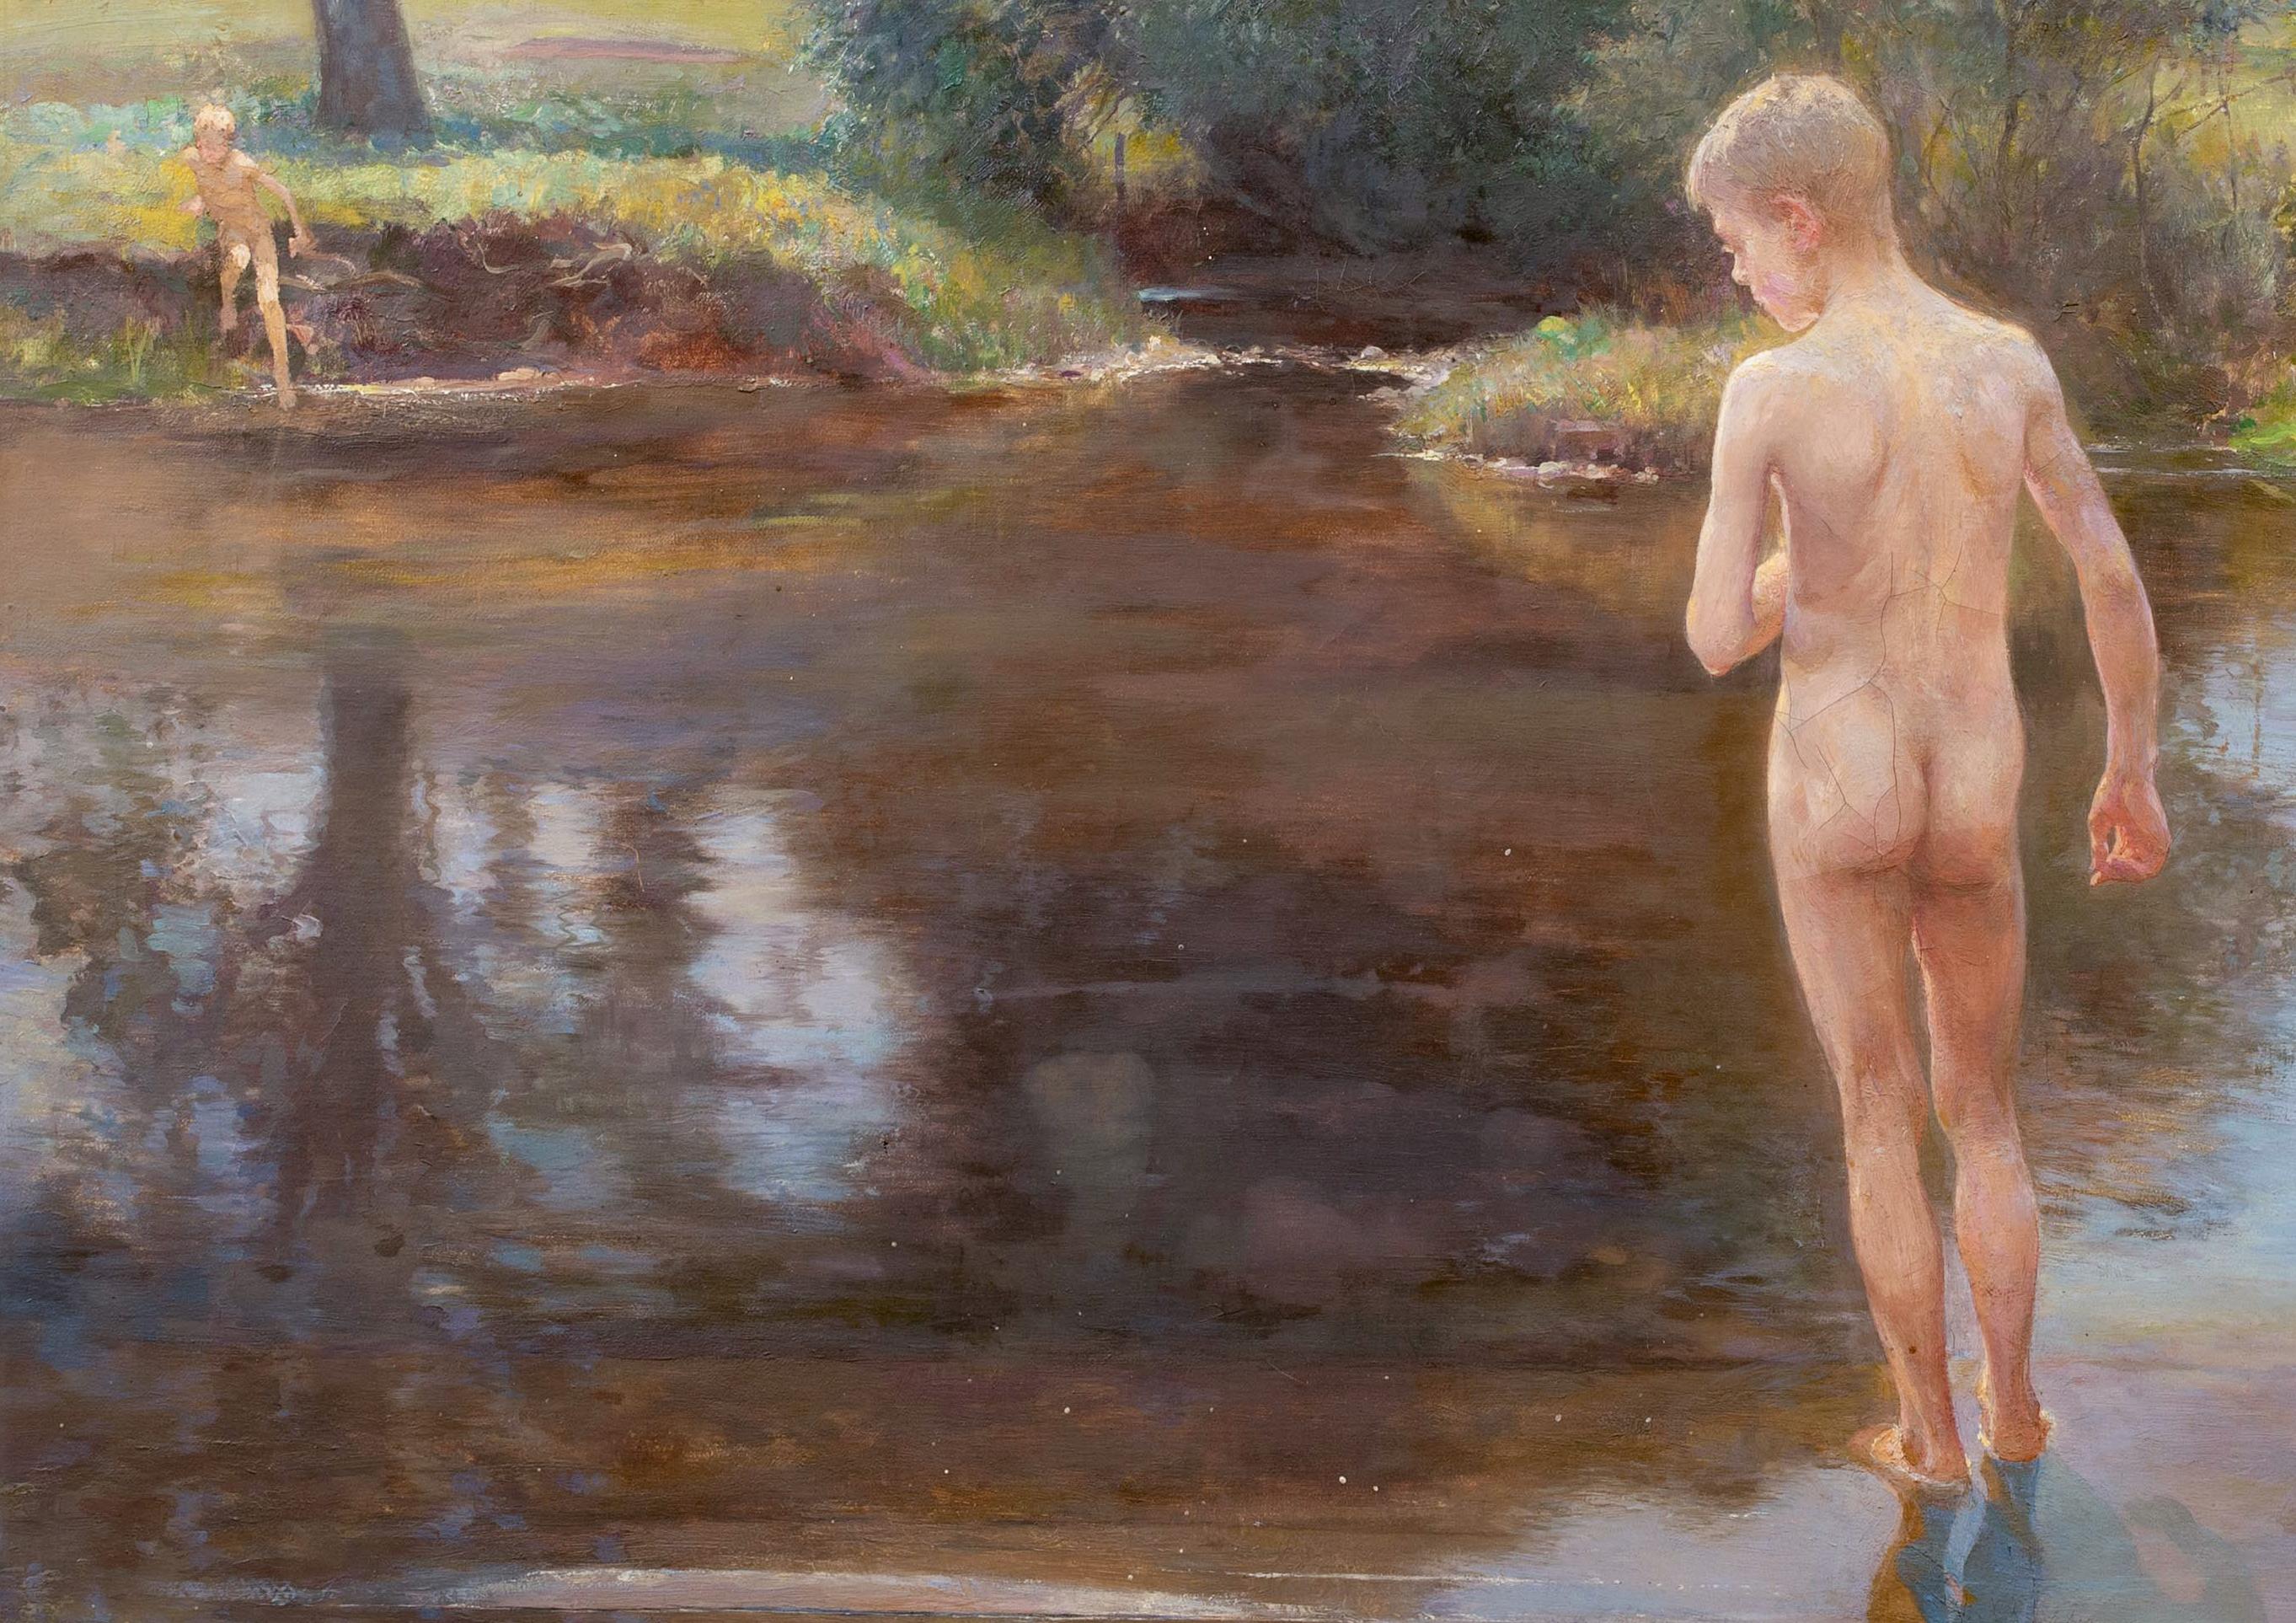 Nude Boys At A Lake, circa 1920  by Henry Thomas Jarman (1871-1956) 3